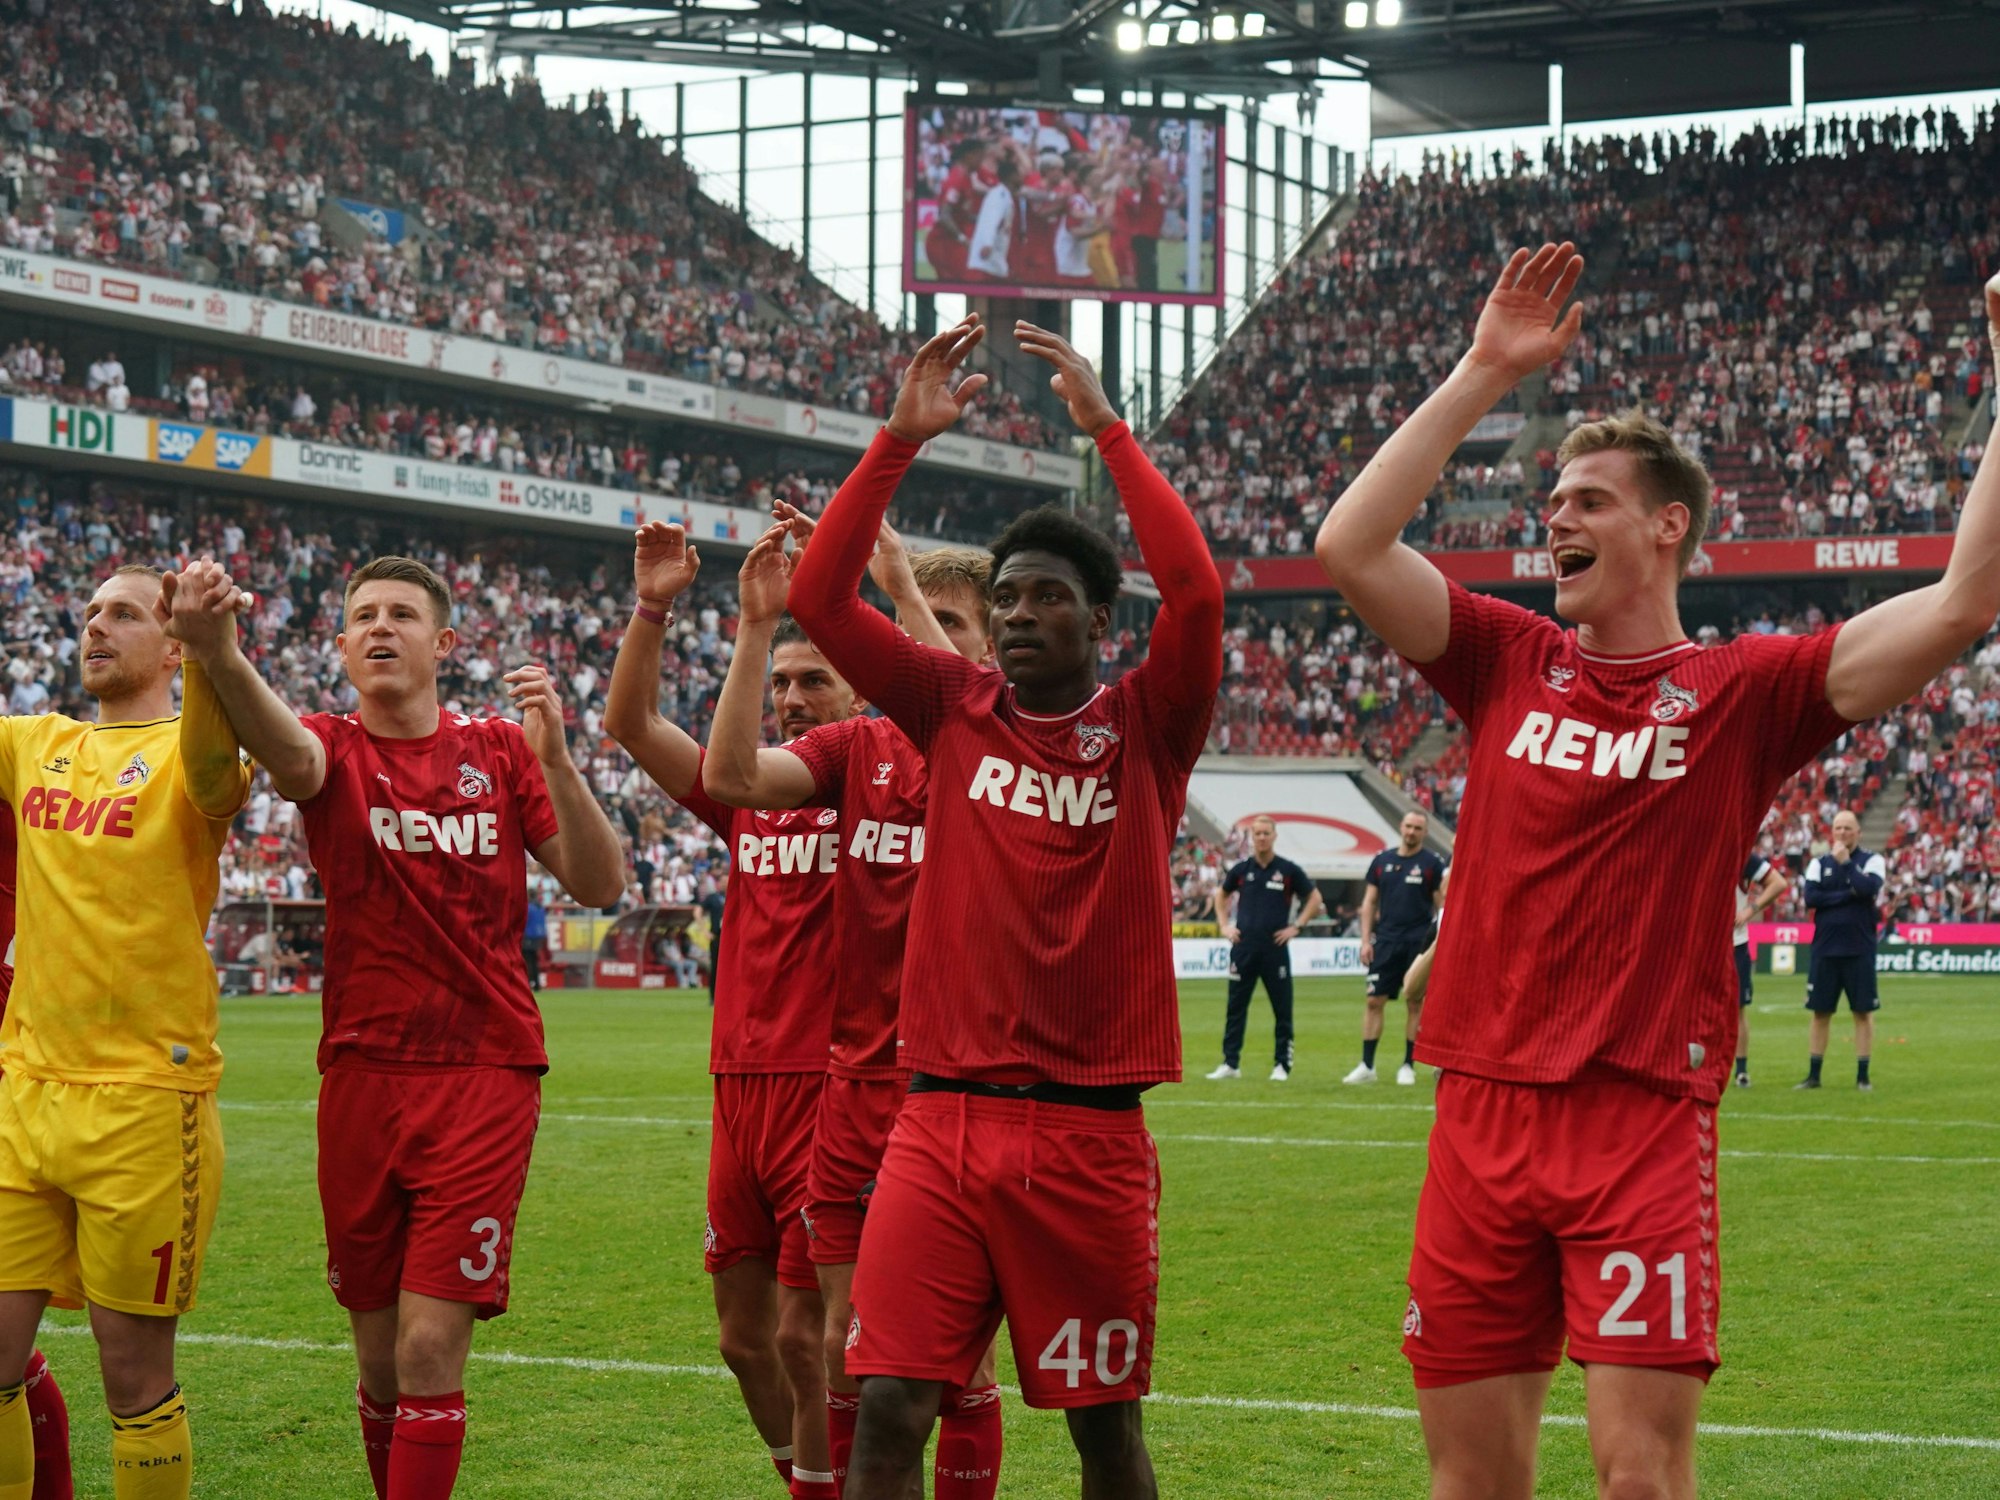 Die Fans des 1. FC Köln feiern mit ihren Fans.